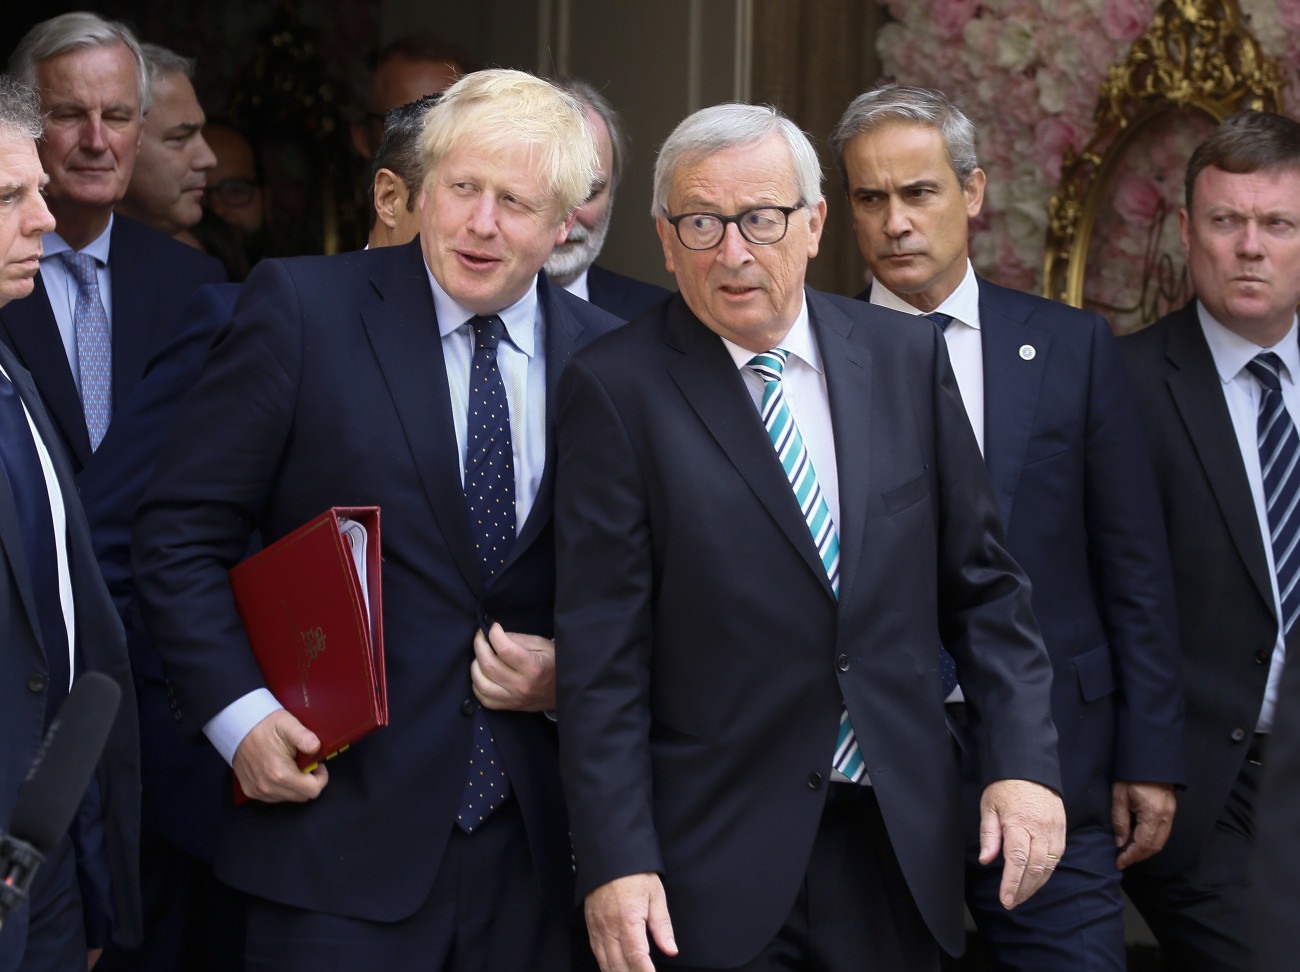 Jean-Claude Juncker, az Európai Bizottság elnöke (j3) és Boris Johnson brit kormányfő távozik luxembourgi megbeszéléseinek helyszínéről 2019. szeptember 16-án. A két vezető a brit EU-tagság megszűnéséről tárgyalt.
MTI/EPA/Julien Warnand